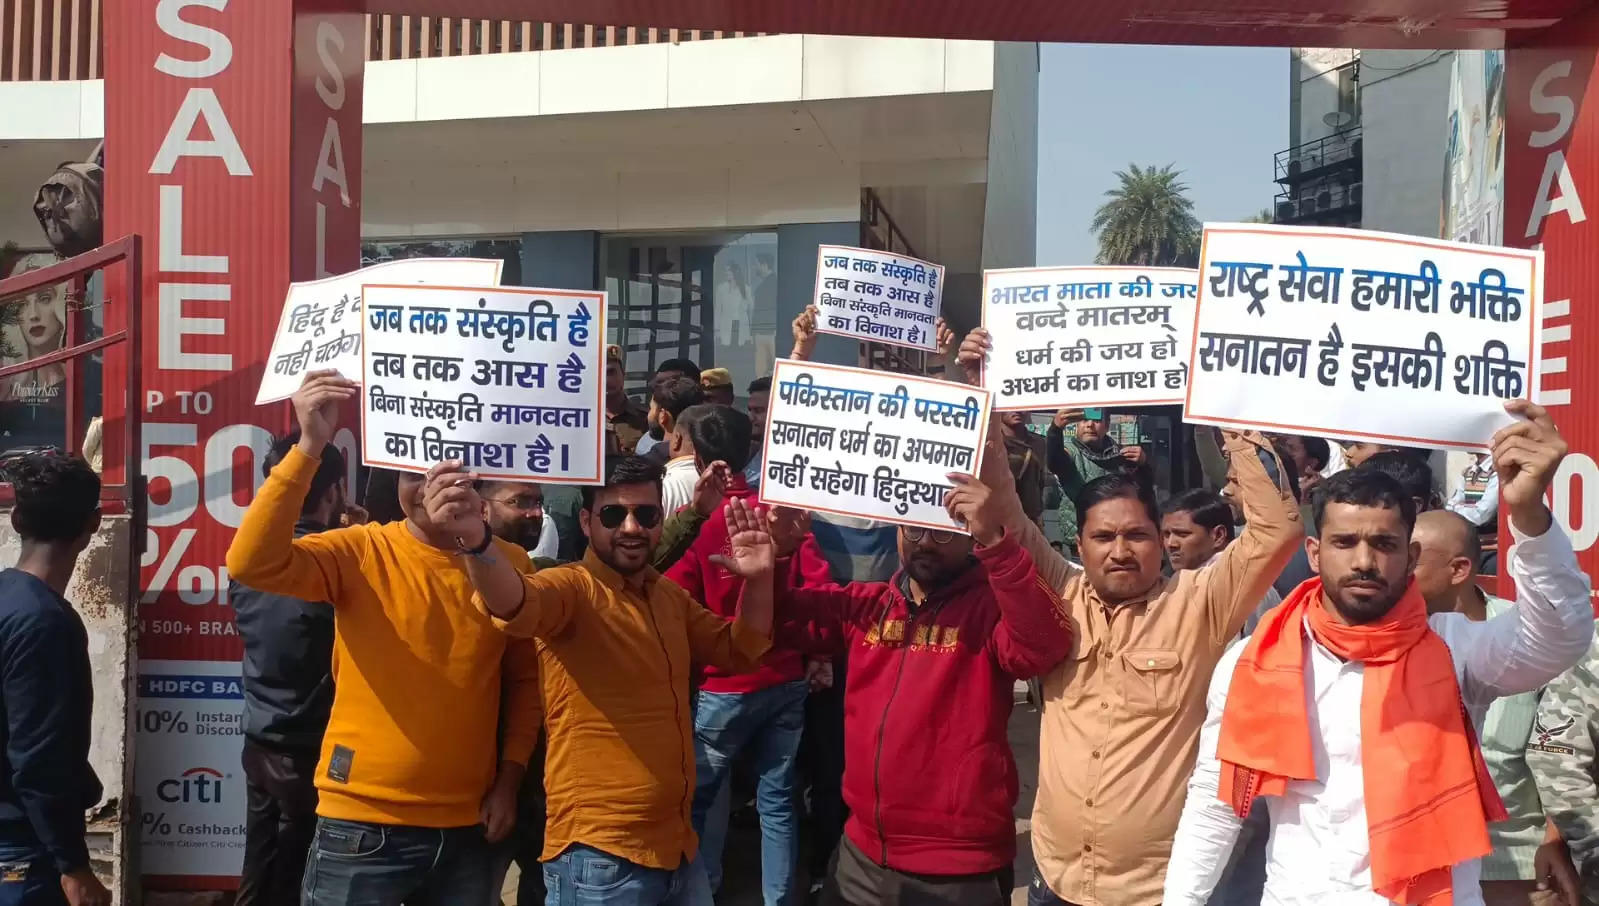  फिल्म पठान के विरोध में हिंदू जागरण मंच के कार्यकर्ताओं ने किया प्रदर्शन